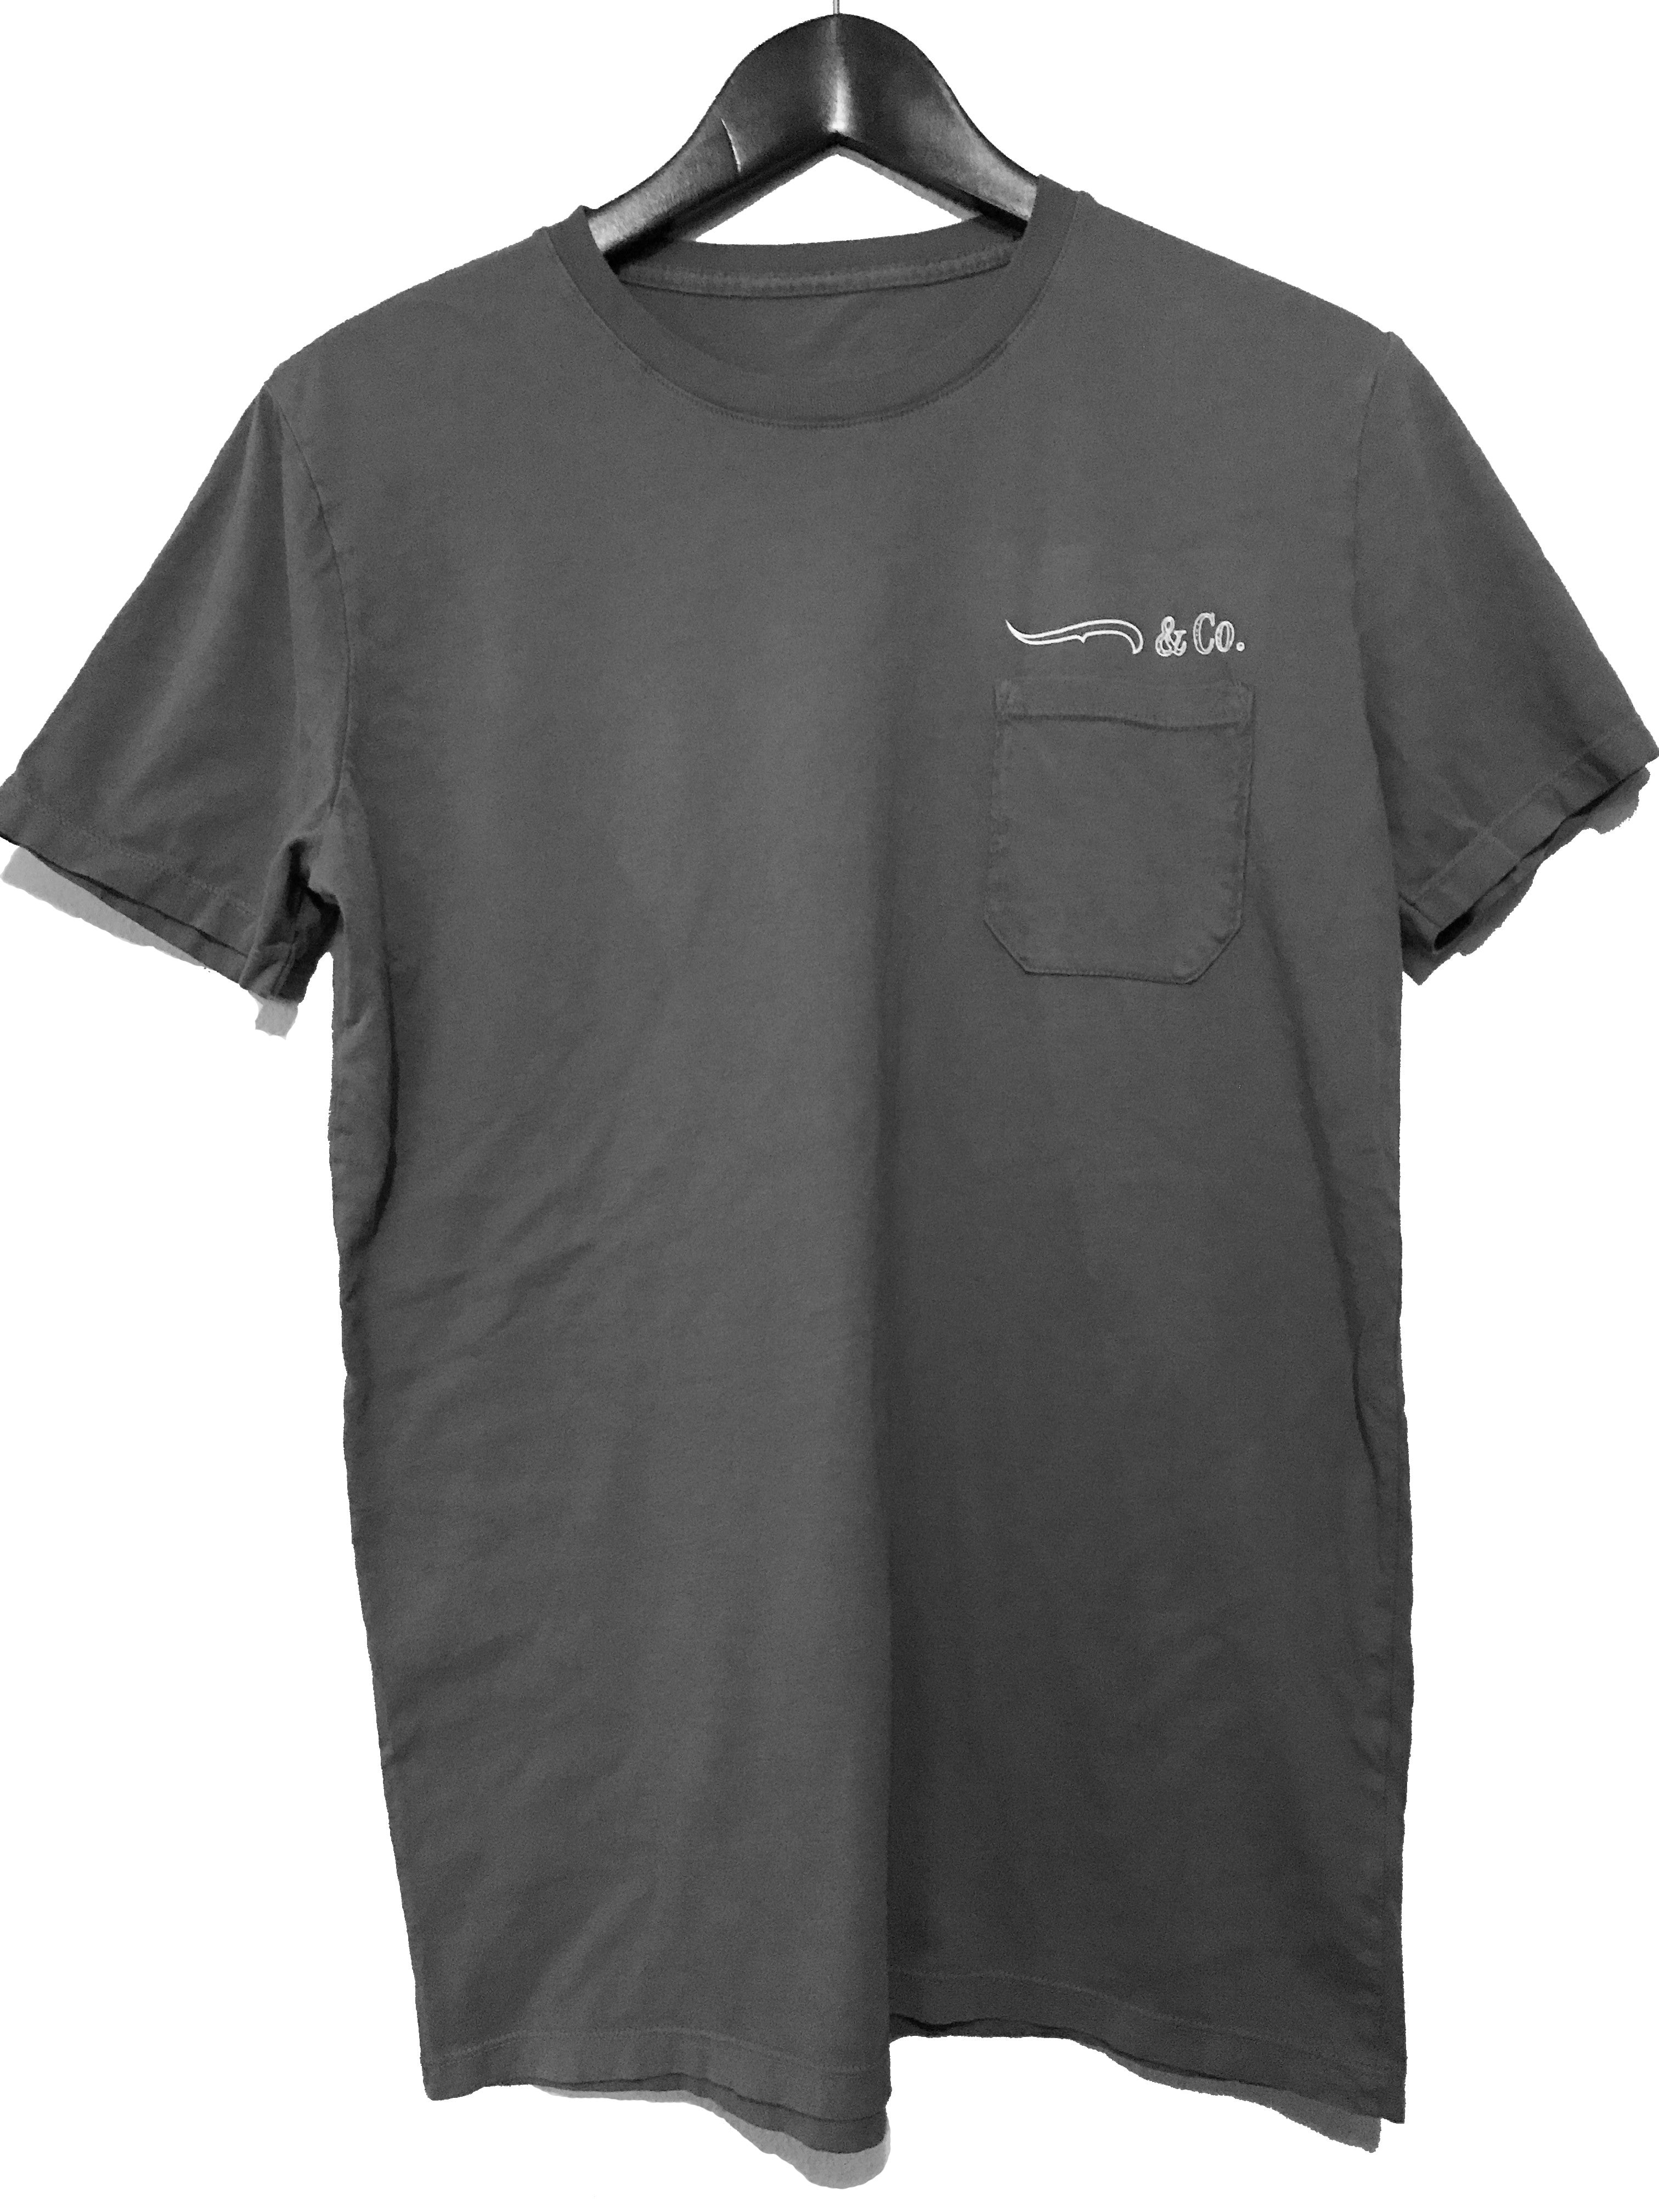 Company Shirt '17 | Lot 1 - Charcoal